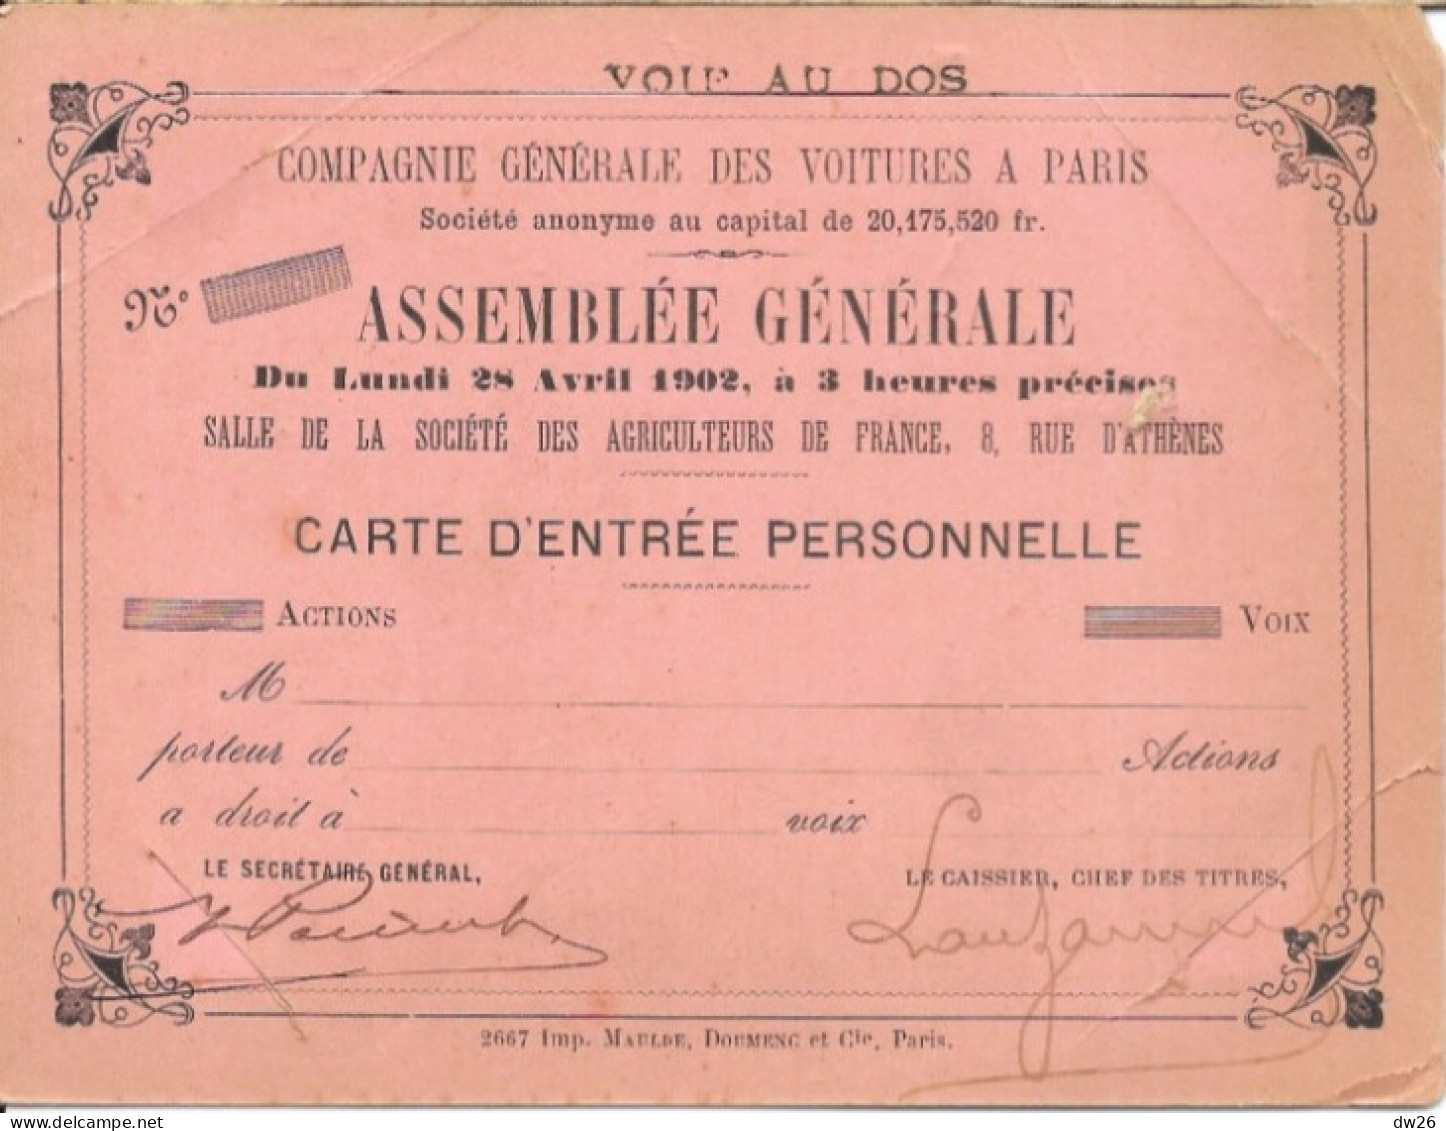 Compagnie Générale Des Voitures à Paris - Carte D'Entrée Pour L'Assemblée Générale 28 Avril 1902 - Cars